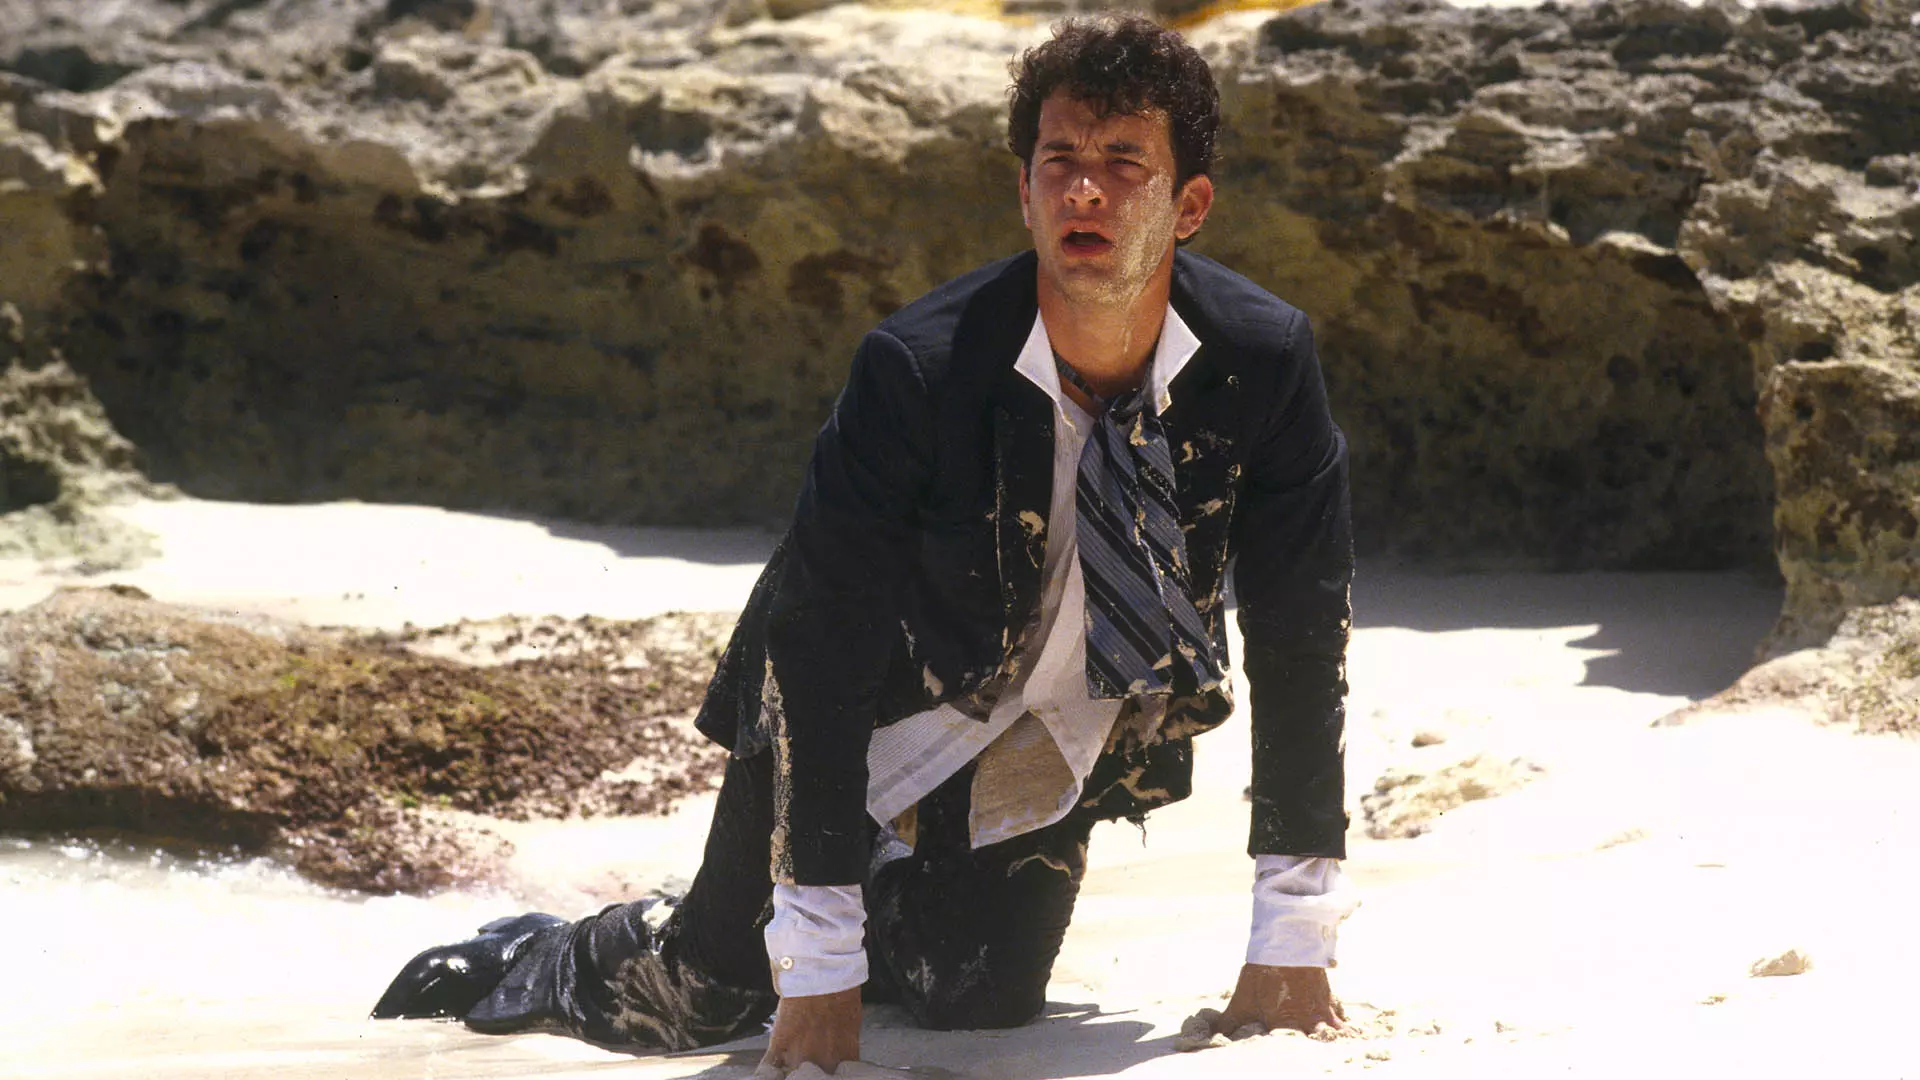 تام هنکس در یک ساحل در فیلم Splash